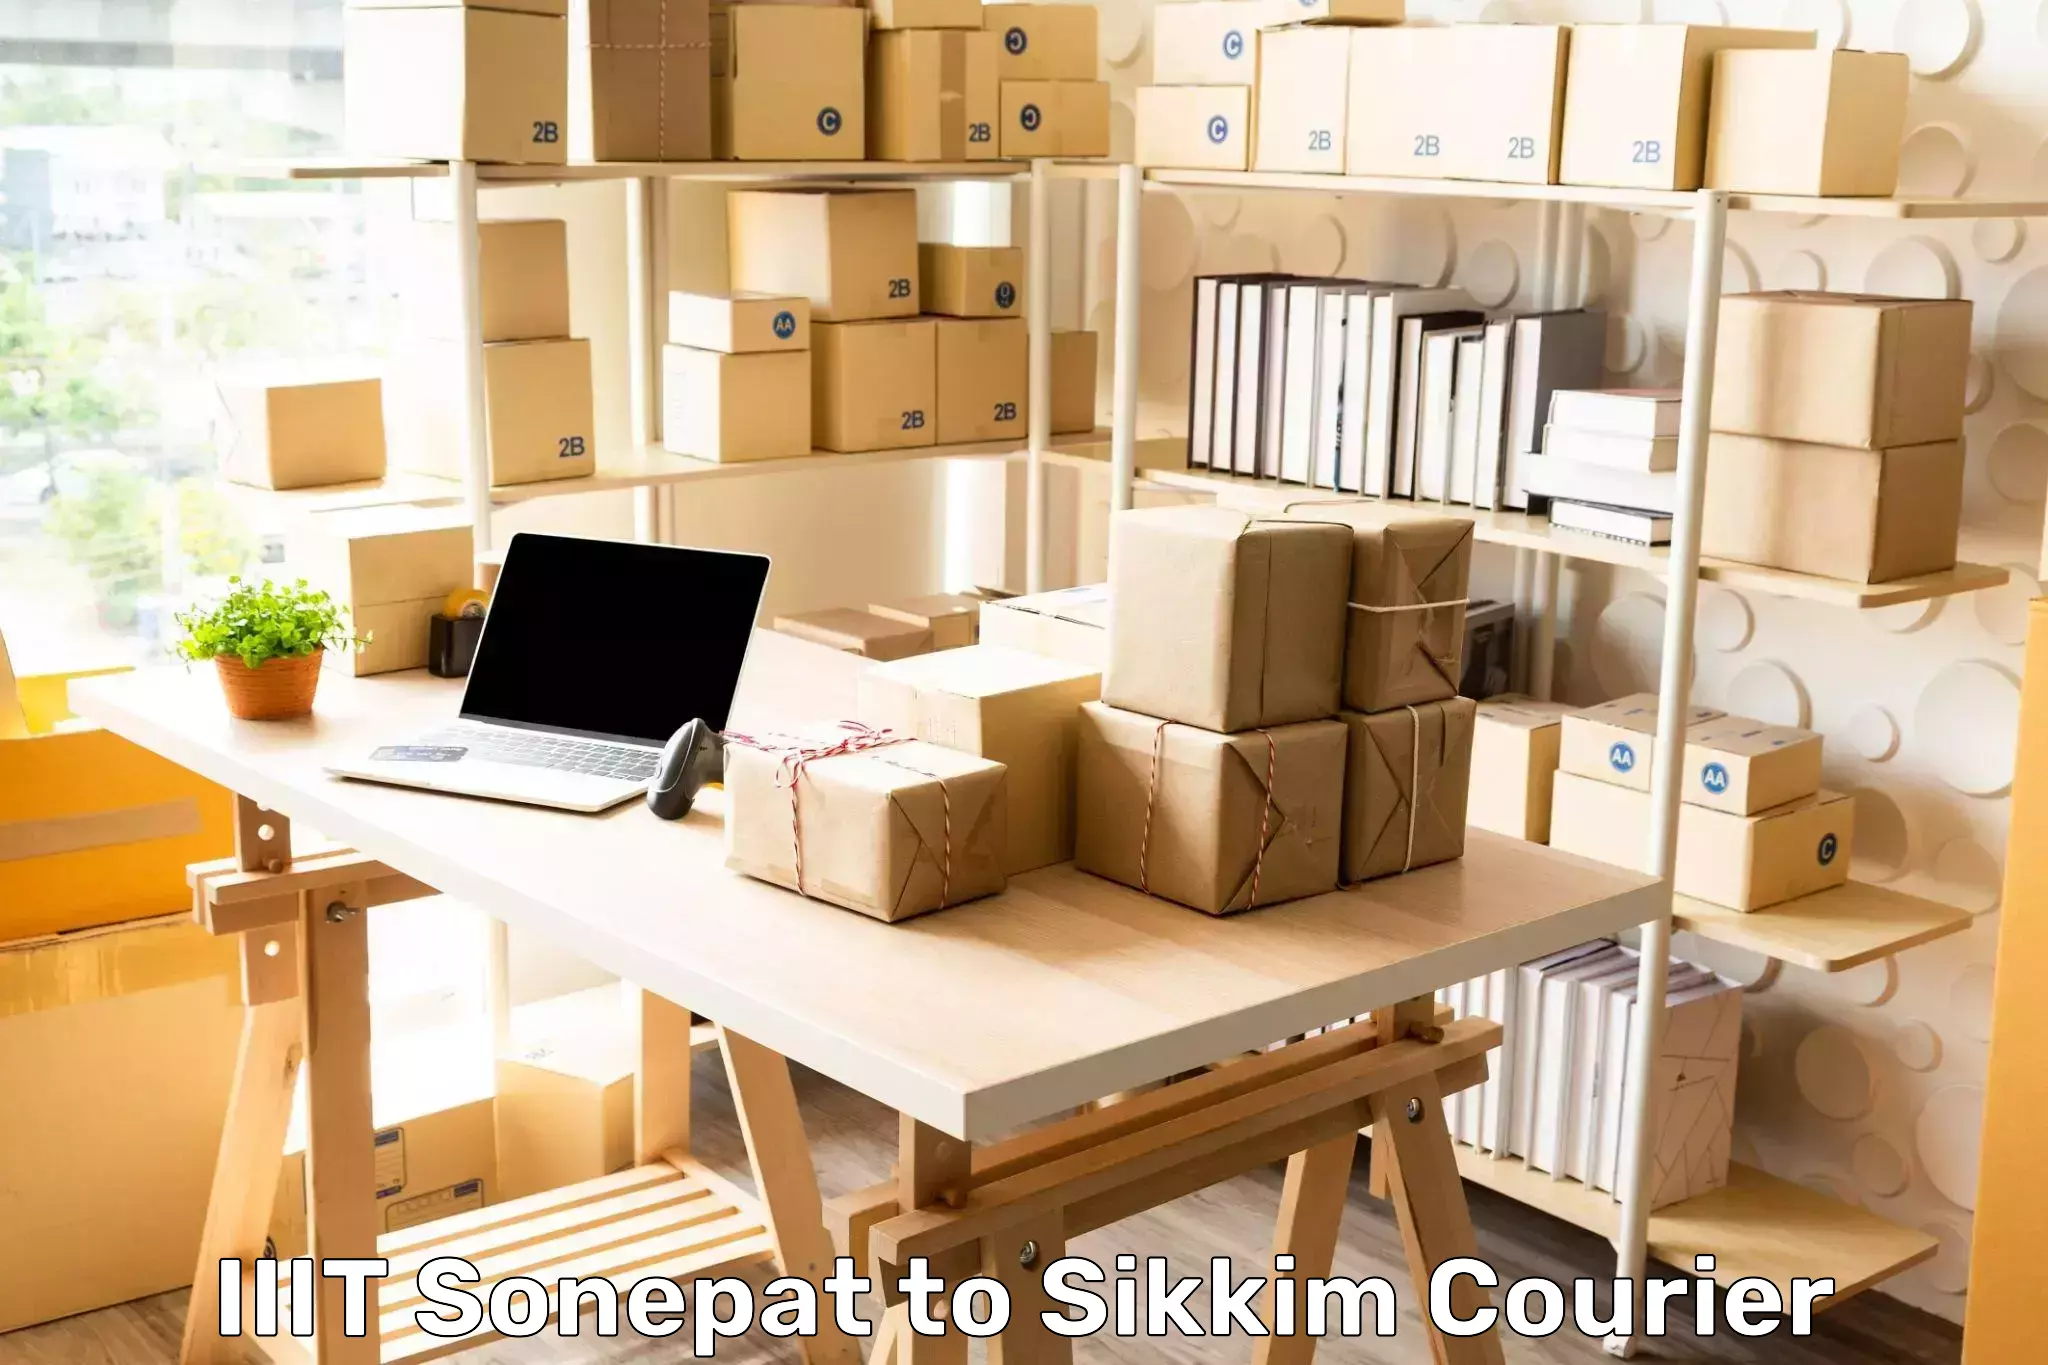 Custom courier strategies IIIT Sonepat to Pelling